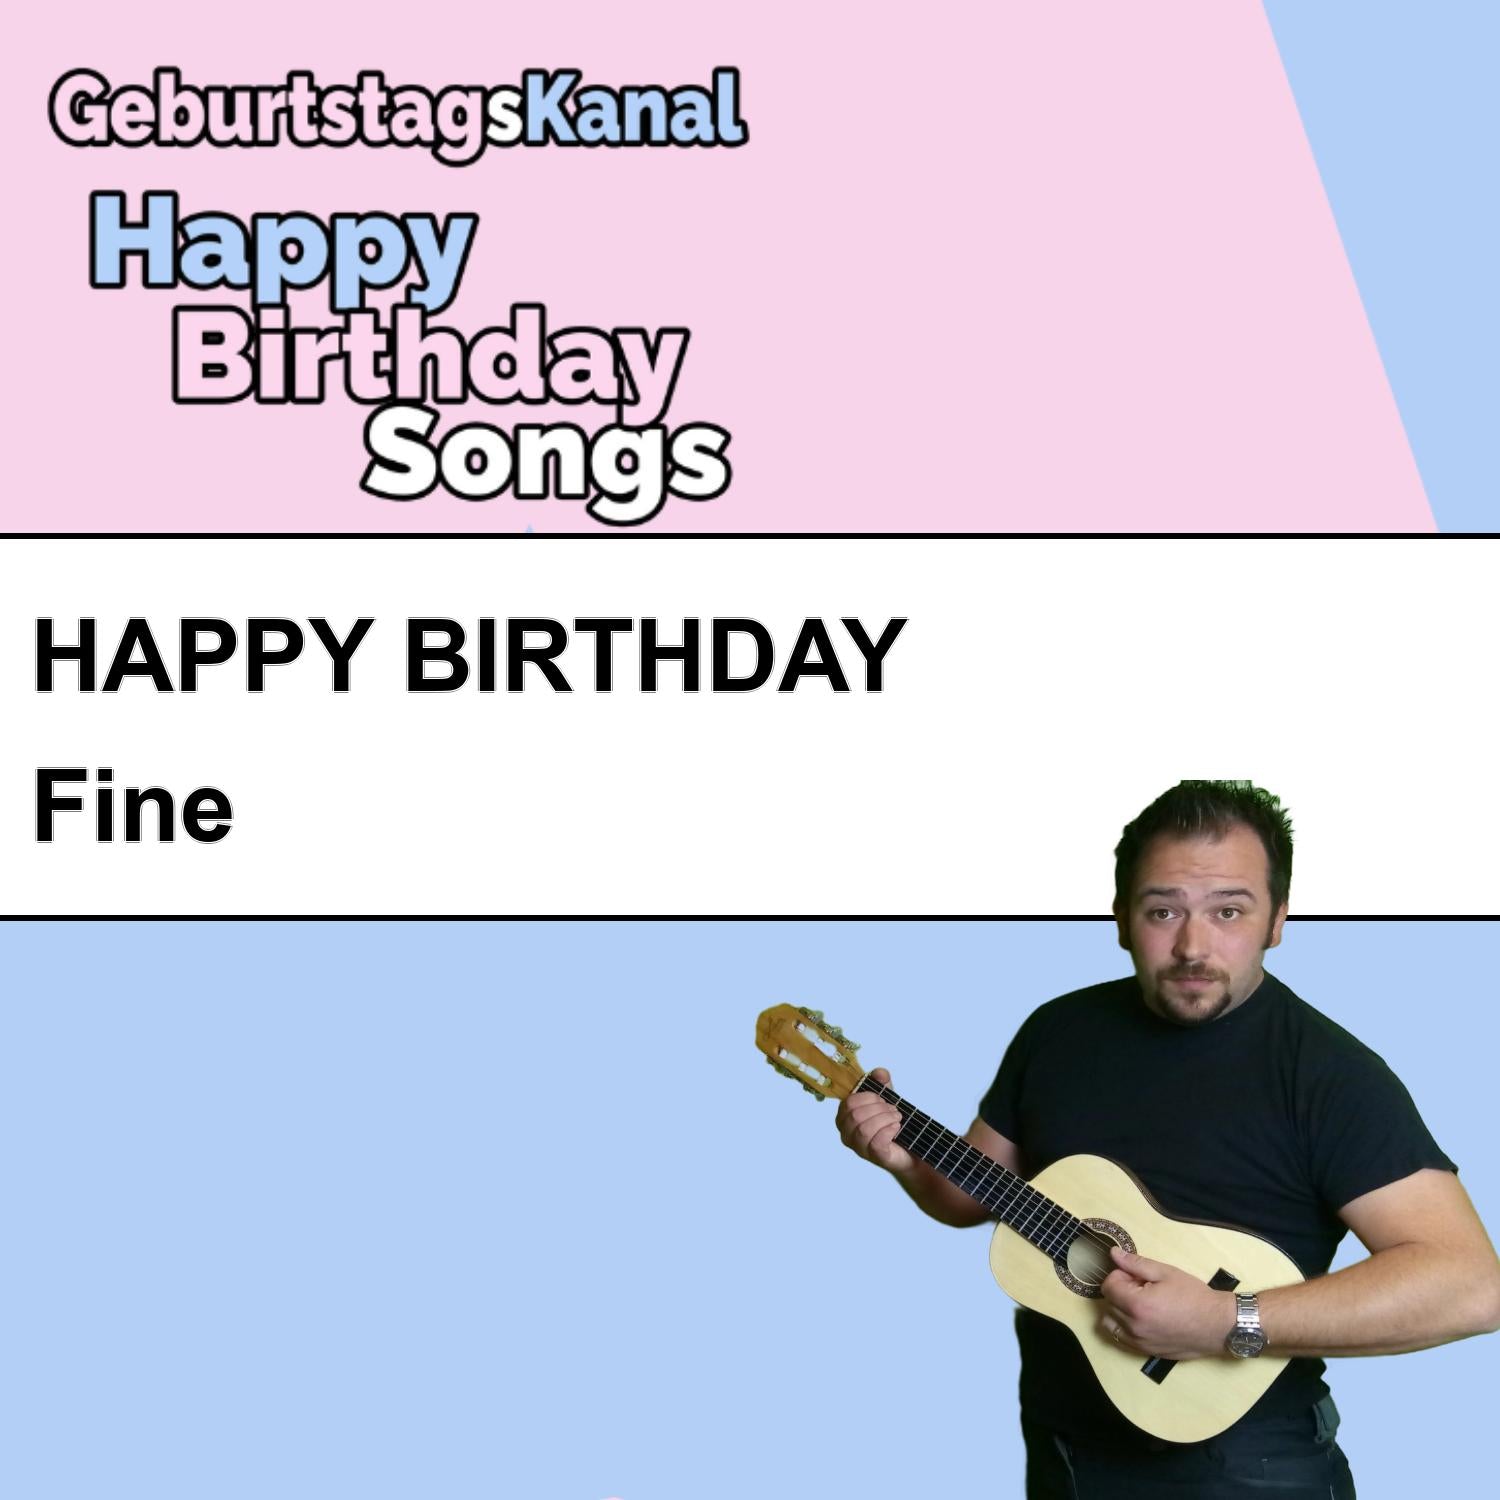 Produktbild Happy Birthday to you Fine mit Wunschgrußbotschaft